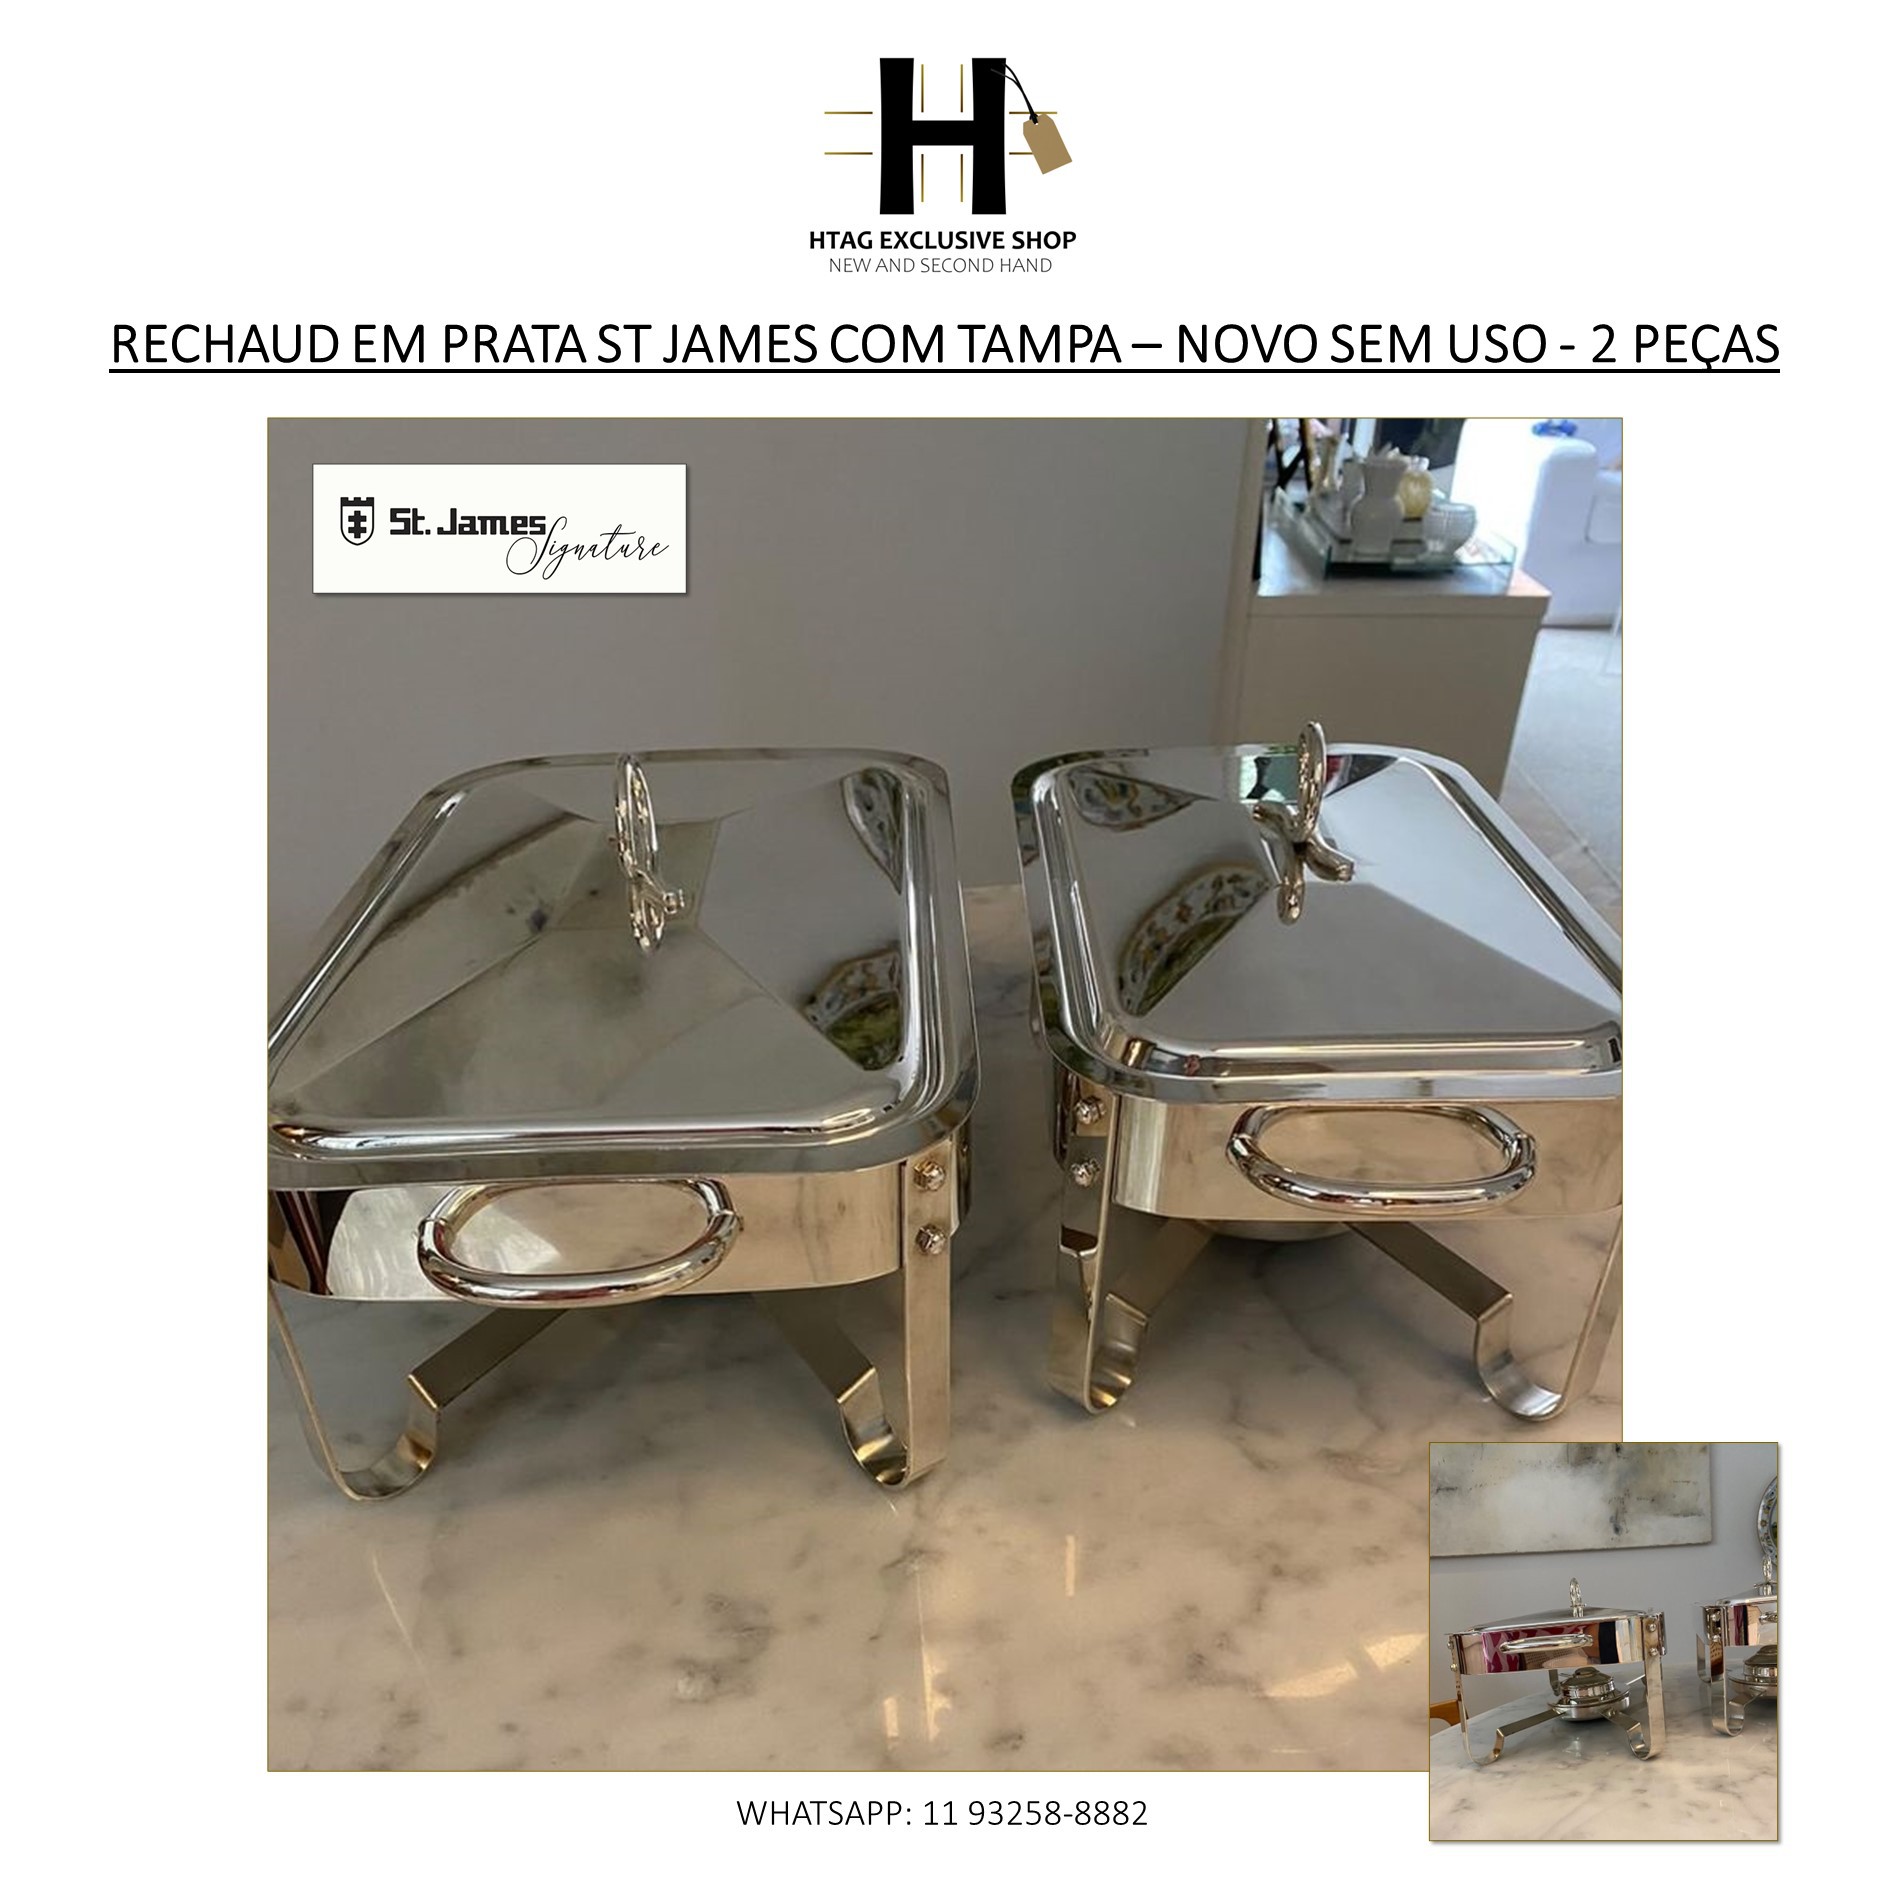 RECHAUD EM PRATA ST JAMES COM TAMPA – NOVO SEM USO - 2 PEÇAS - HTAG  EXCLUSIVE SHOP - New & Second Hand